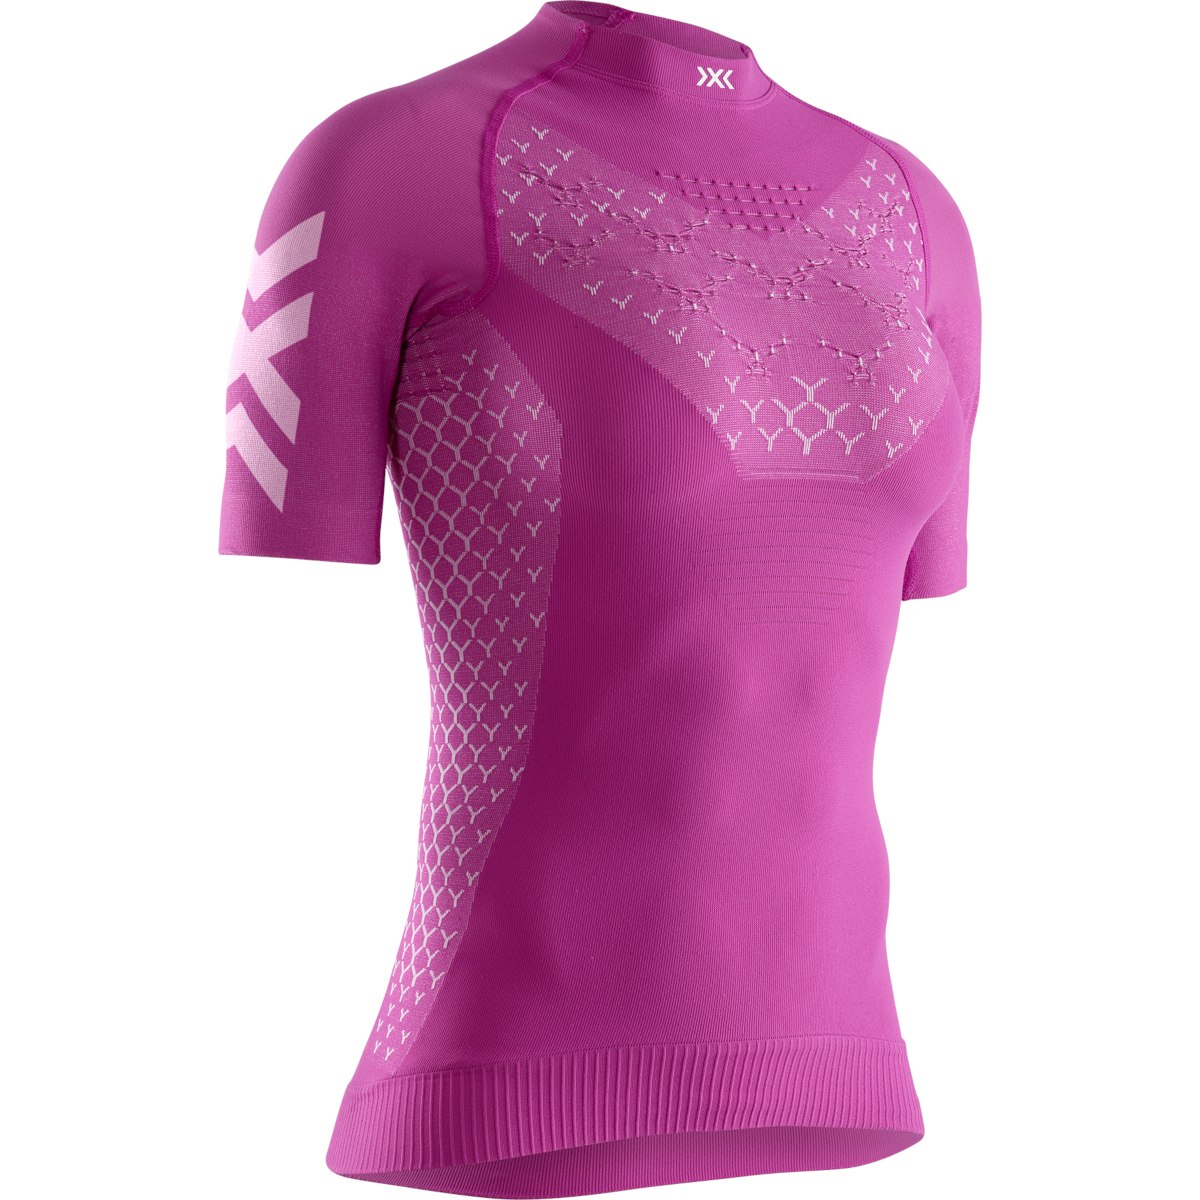 Produktbild von X-Bionic TWYCE 4.0 Run Kurzarm-Laufshirt für Damen - twyce purple/arctic white